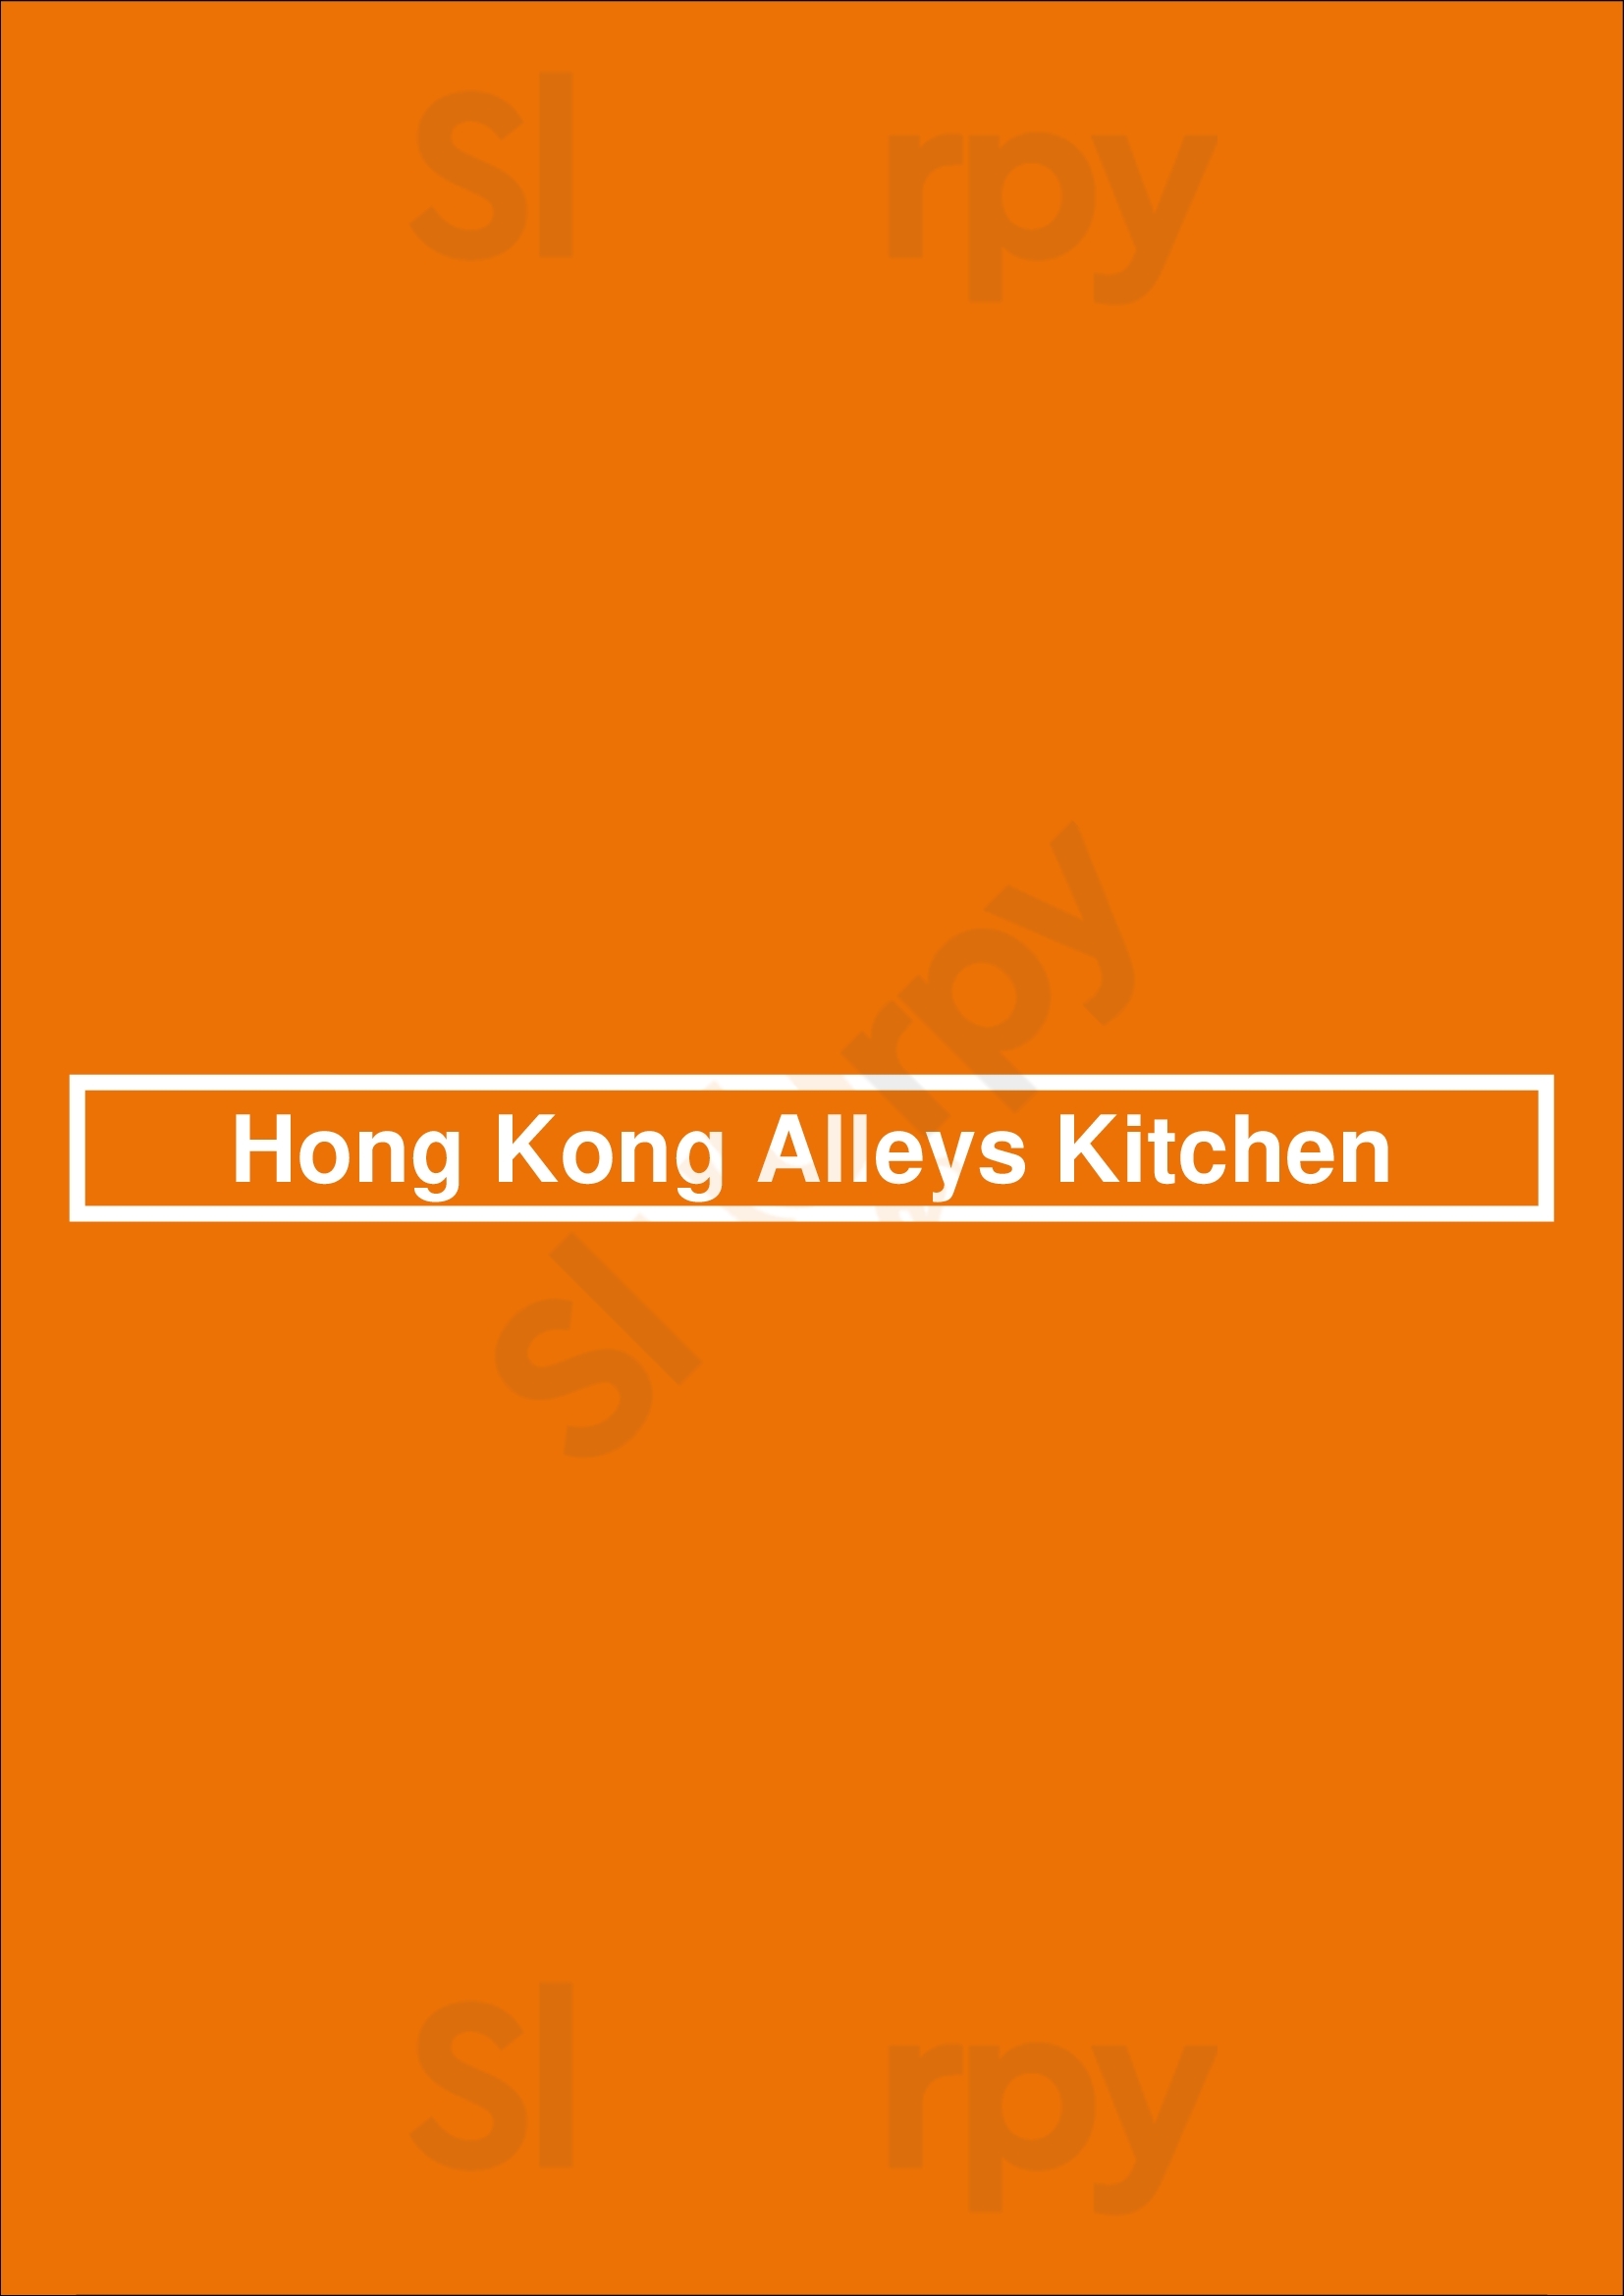 Hong Kong Alleys Kitchen Orlando Menu - 1